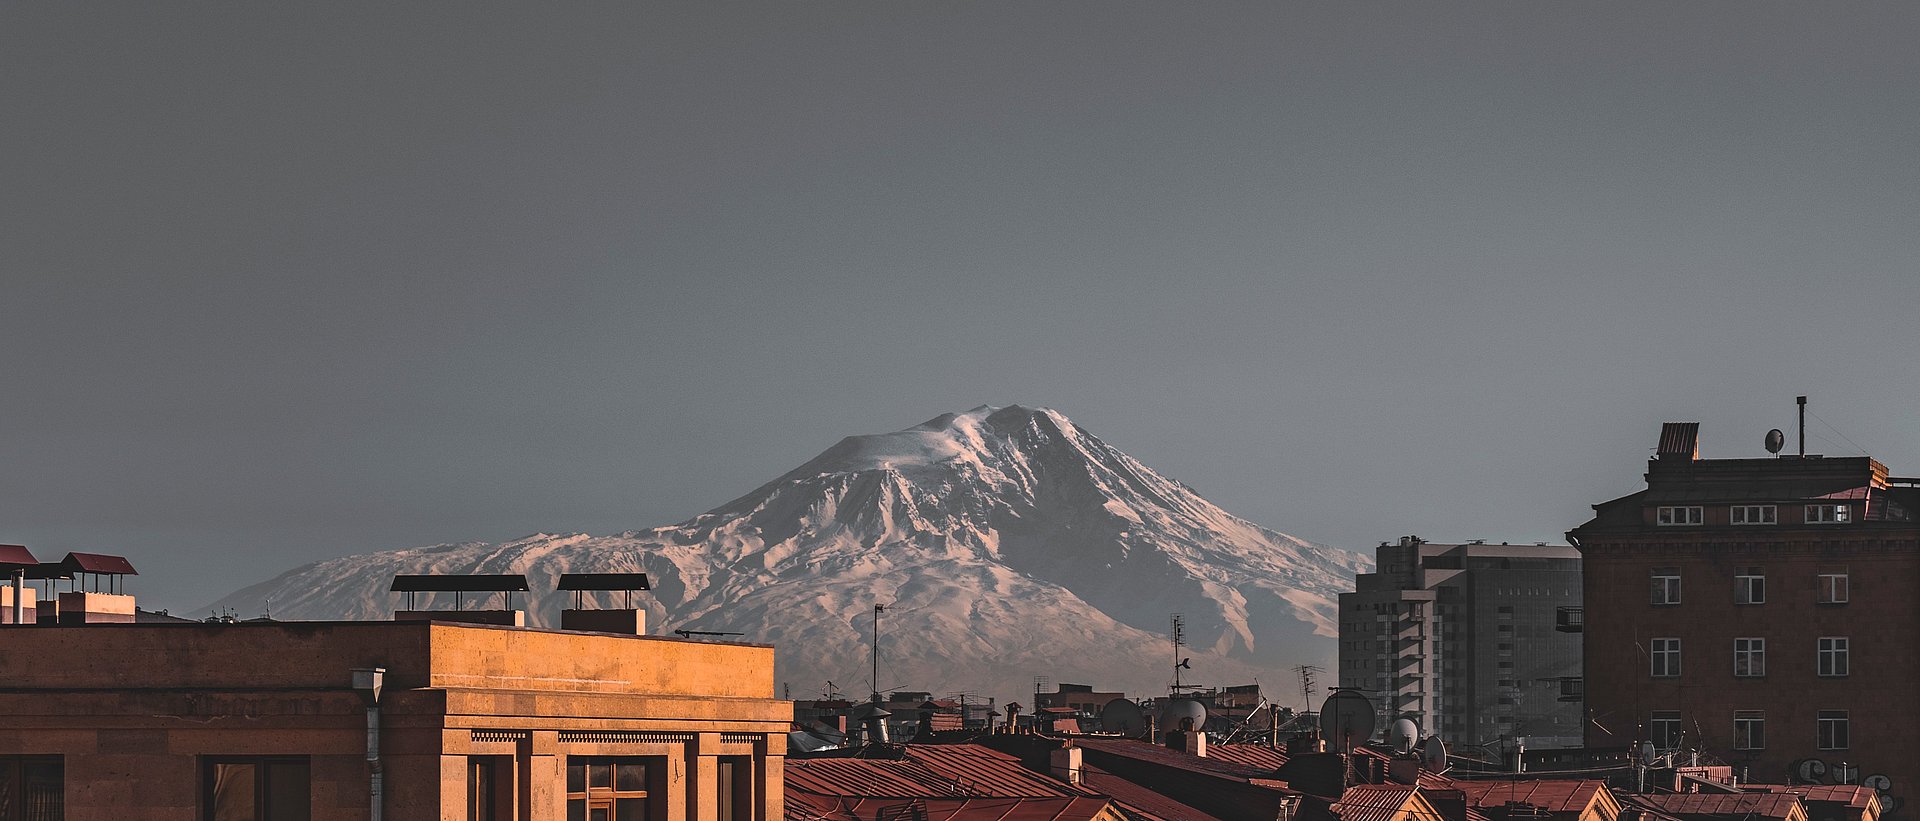 Berge und Häuser beim FSJ Armenien